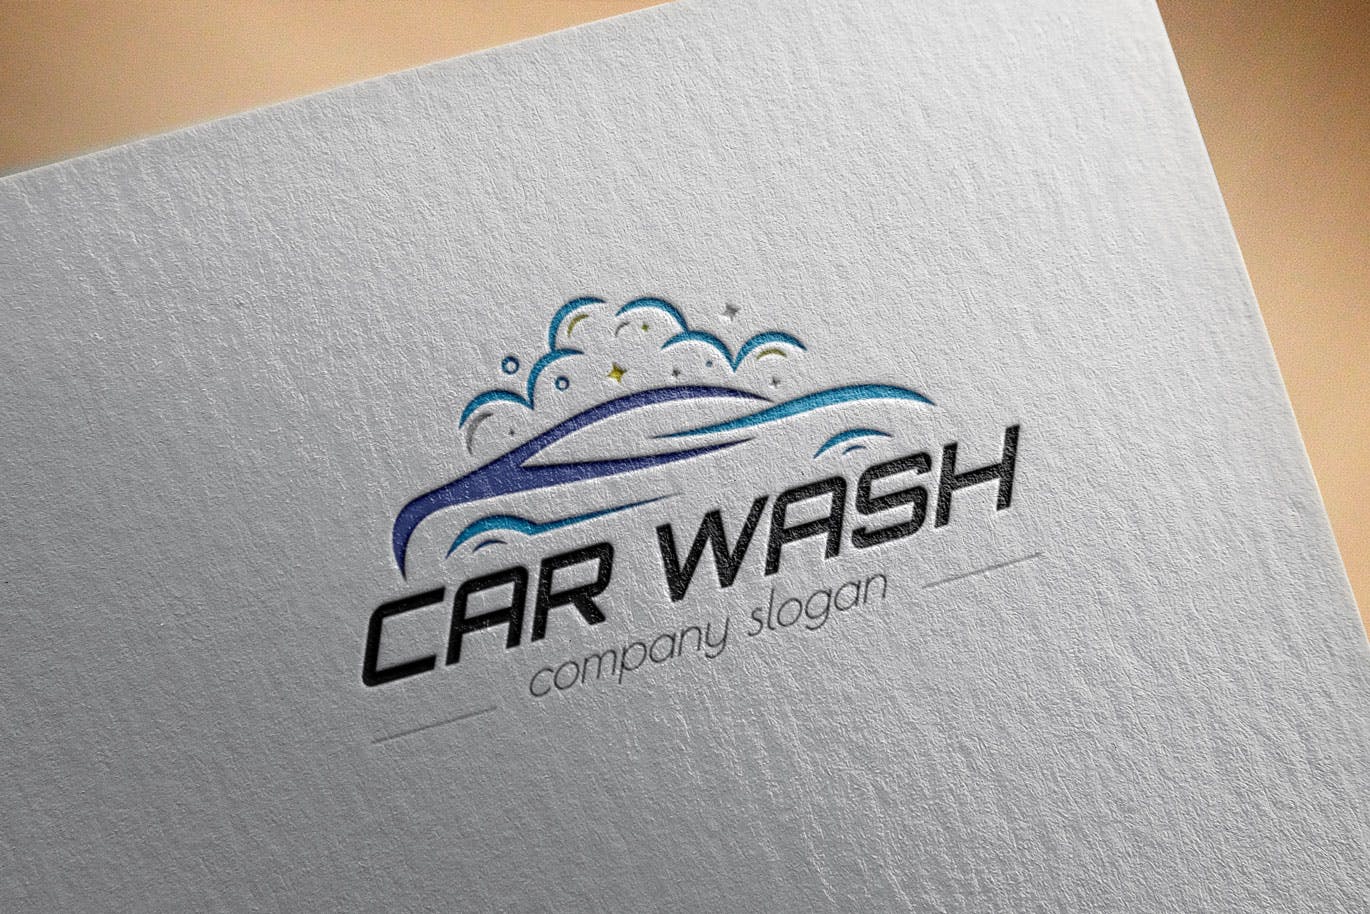 洗车店品牌Logo设计素材库精选模板 Car Wash Business Logo Template插图(2)